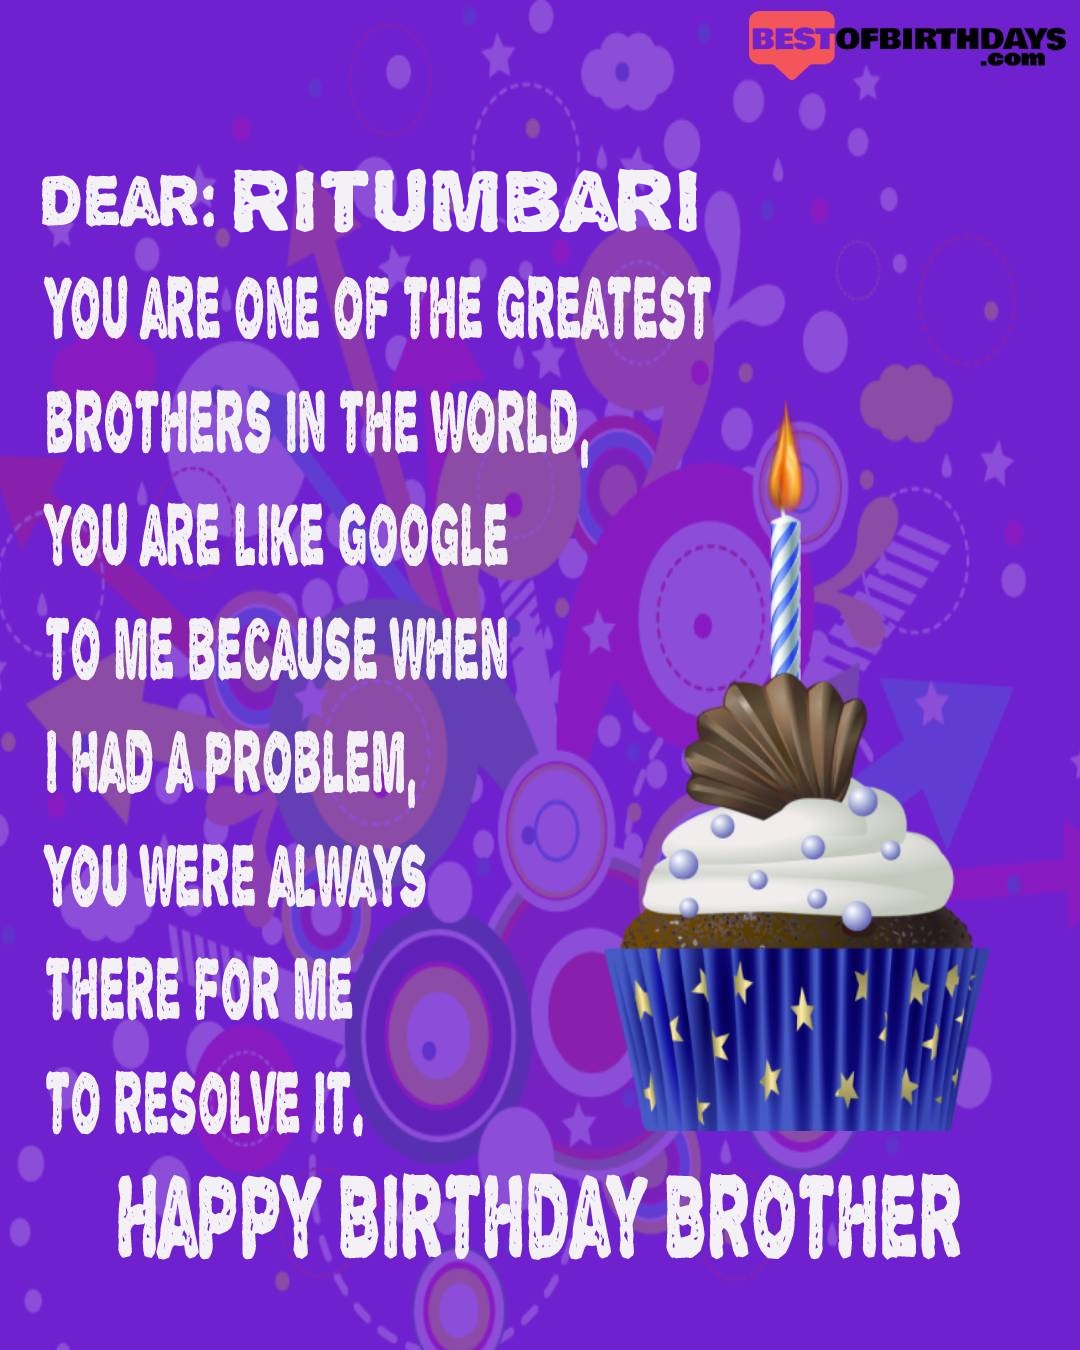 Happy birthday ritumbari bhai brother bro